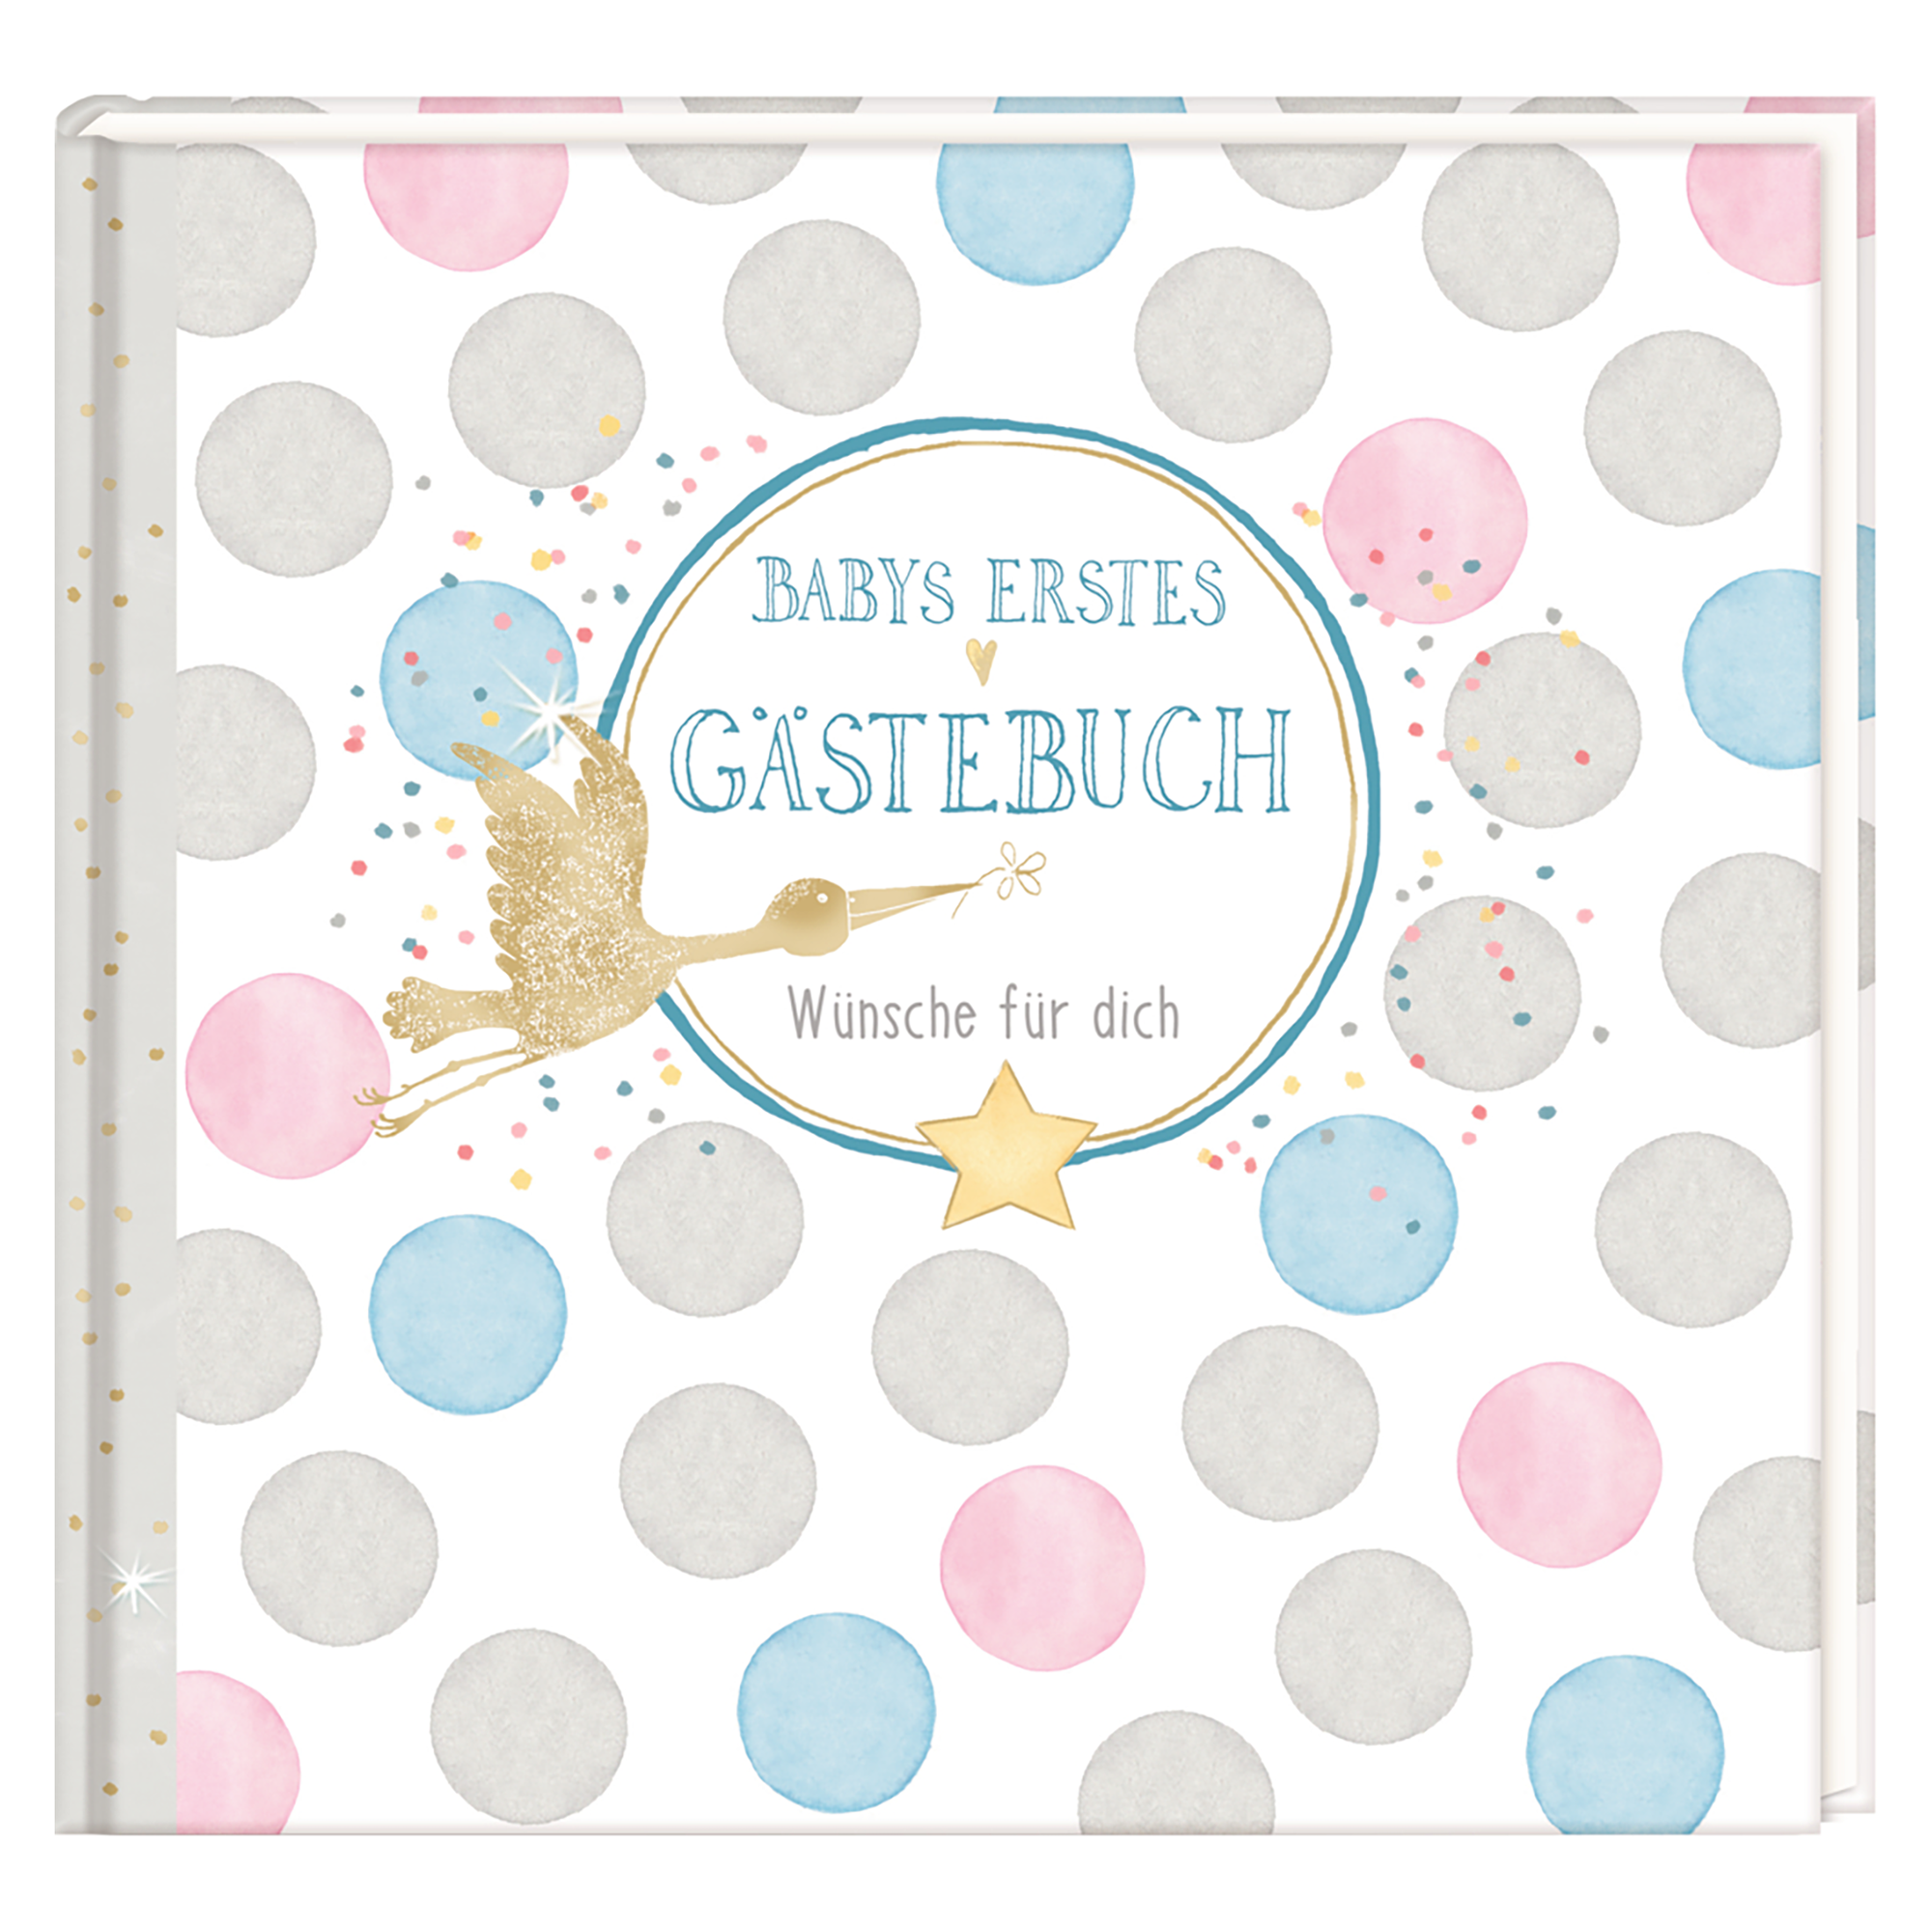 Babys erstes Gästebuch - Wünsche für Dich COPPENRATH Weiß 2000571819009 1